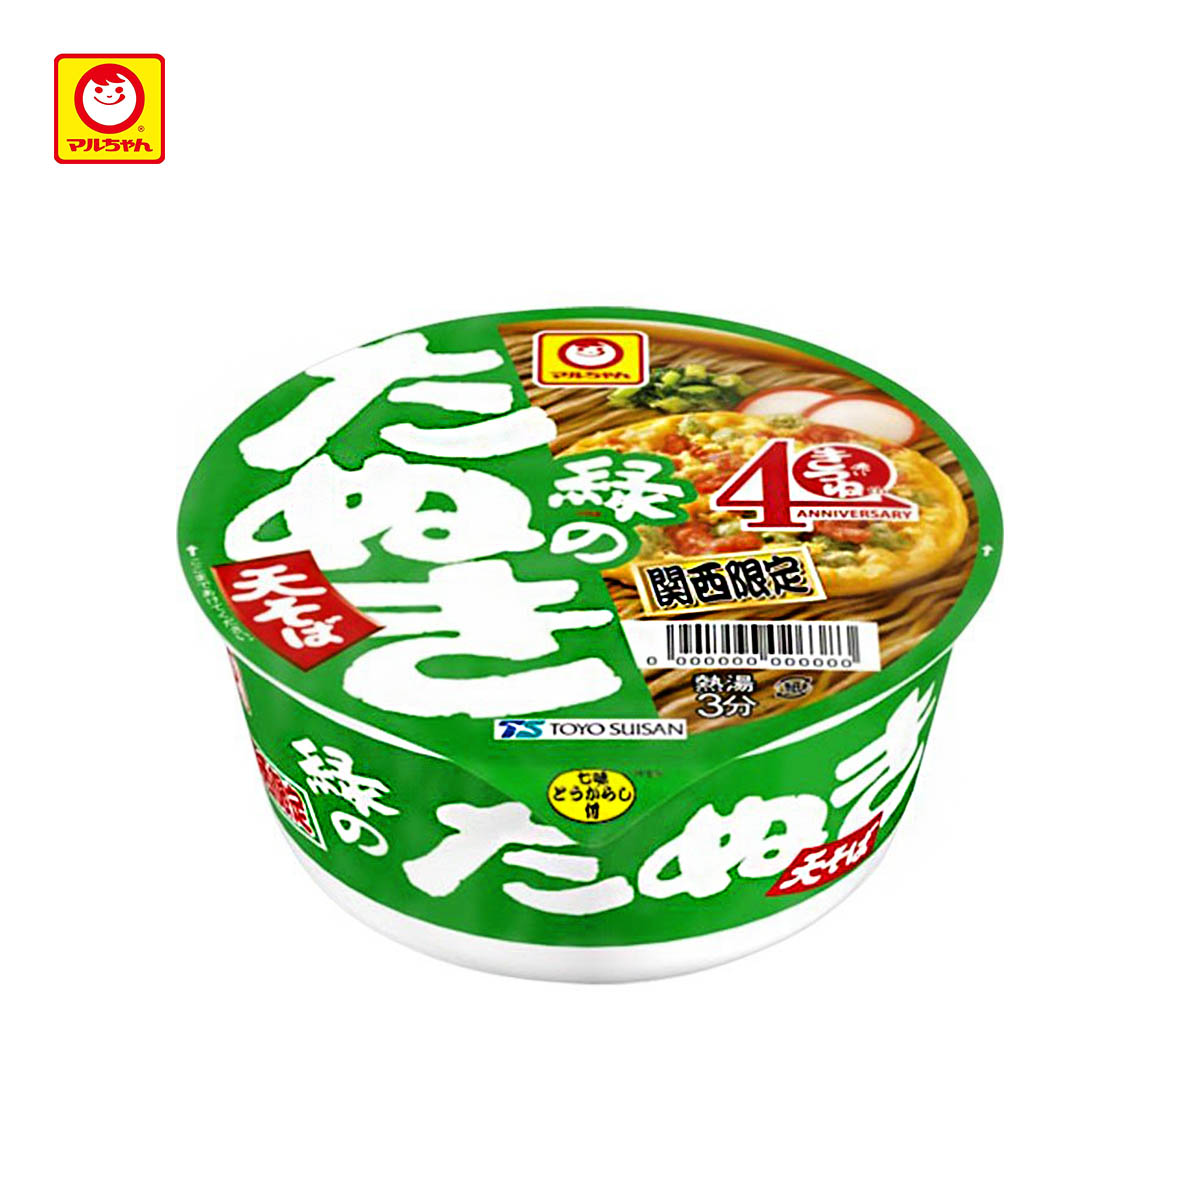 天婦羅蕎麥風味麵 關西限定 101g-日清 NISSIN 日本進口製造